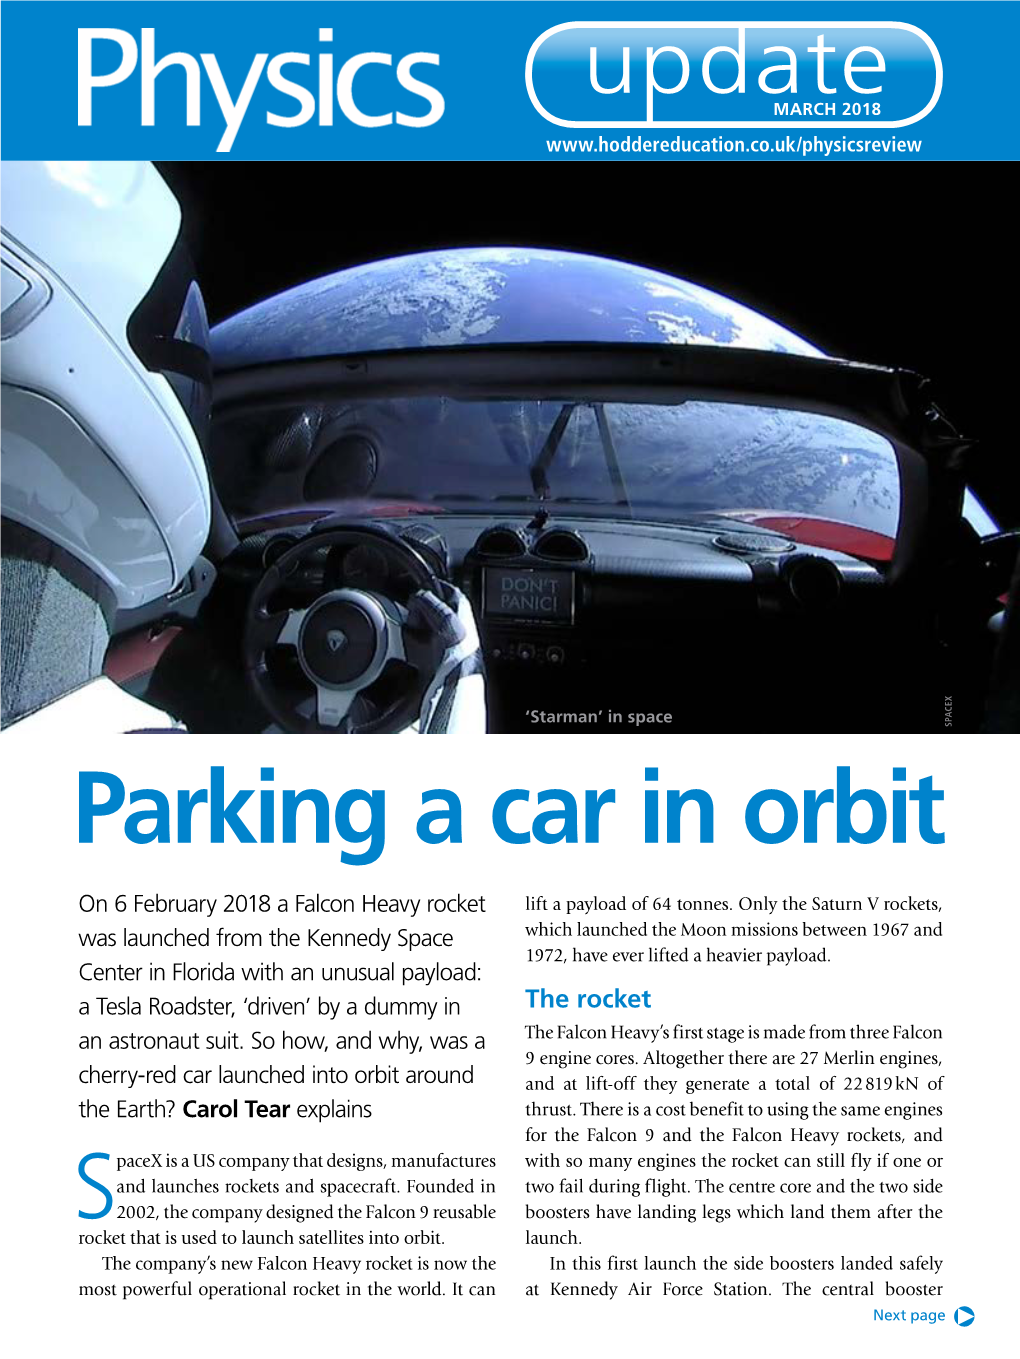 Parking a Car in Orbit